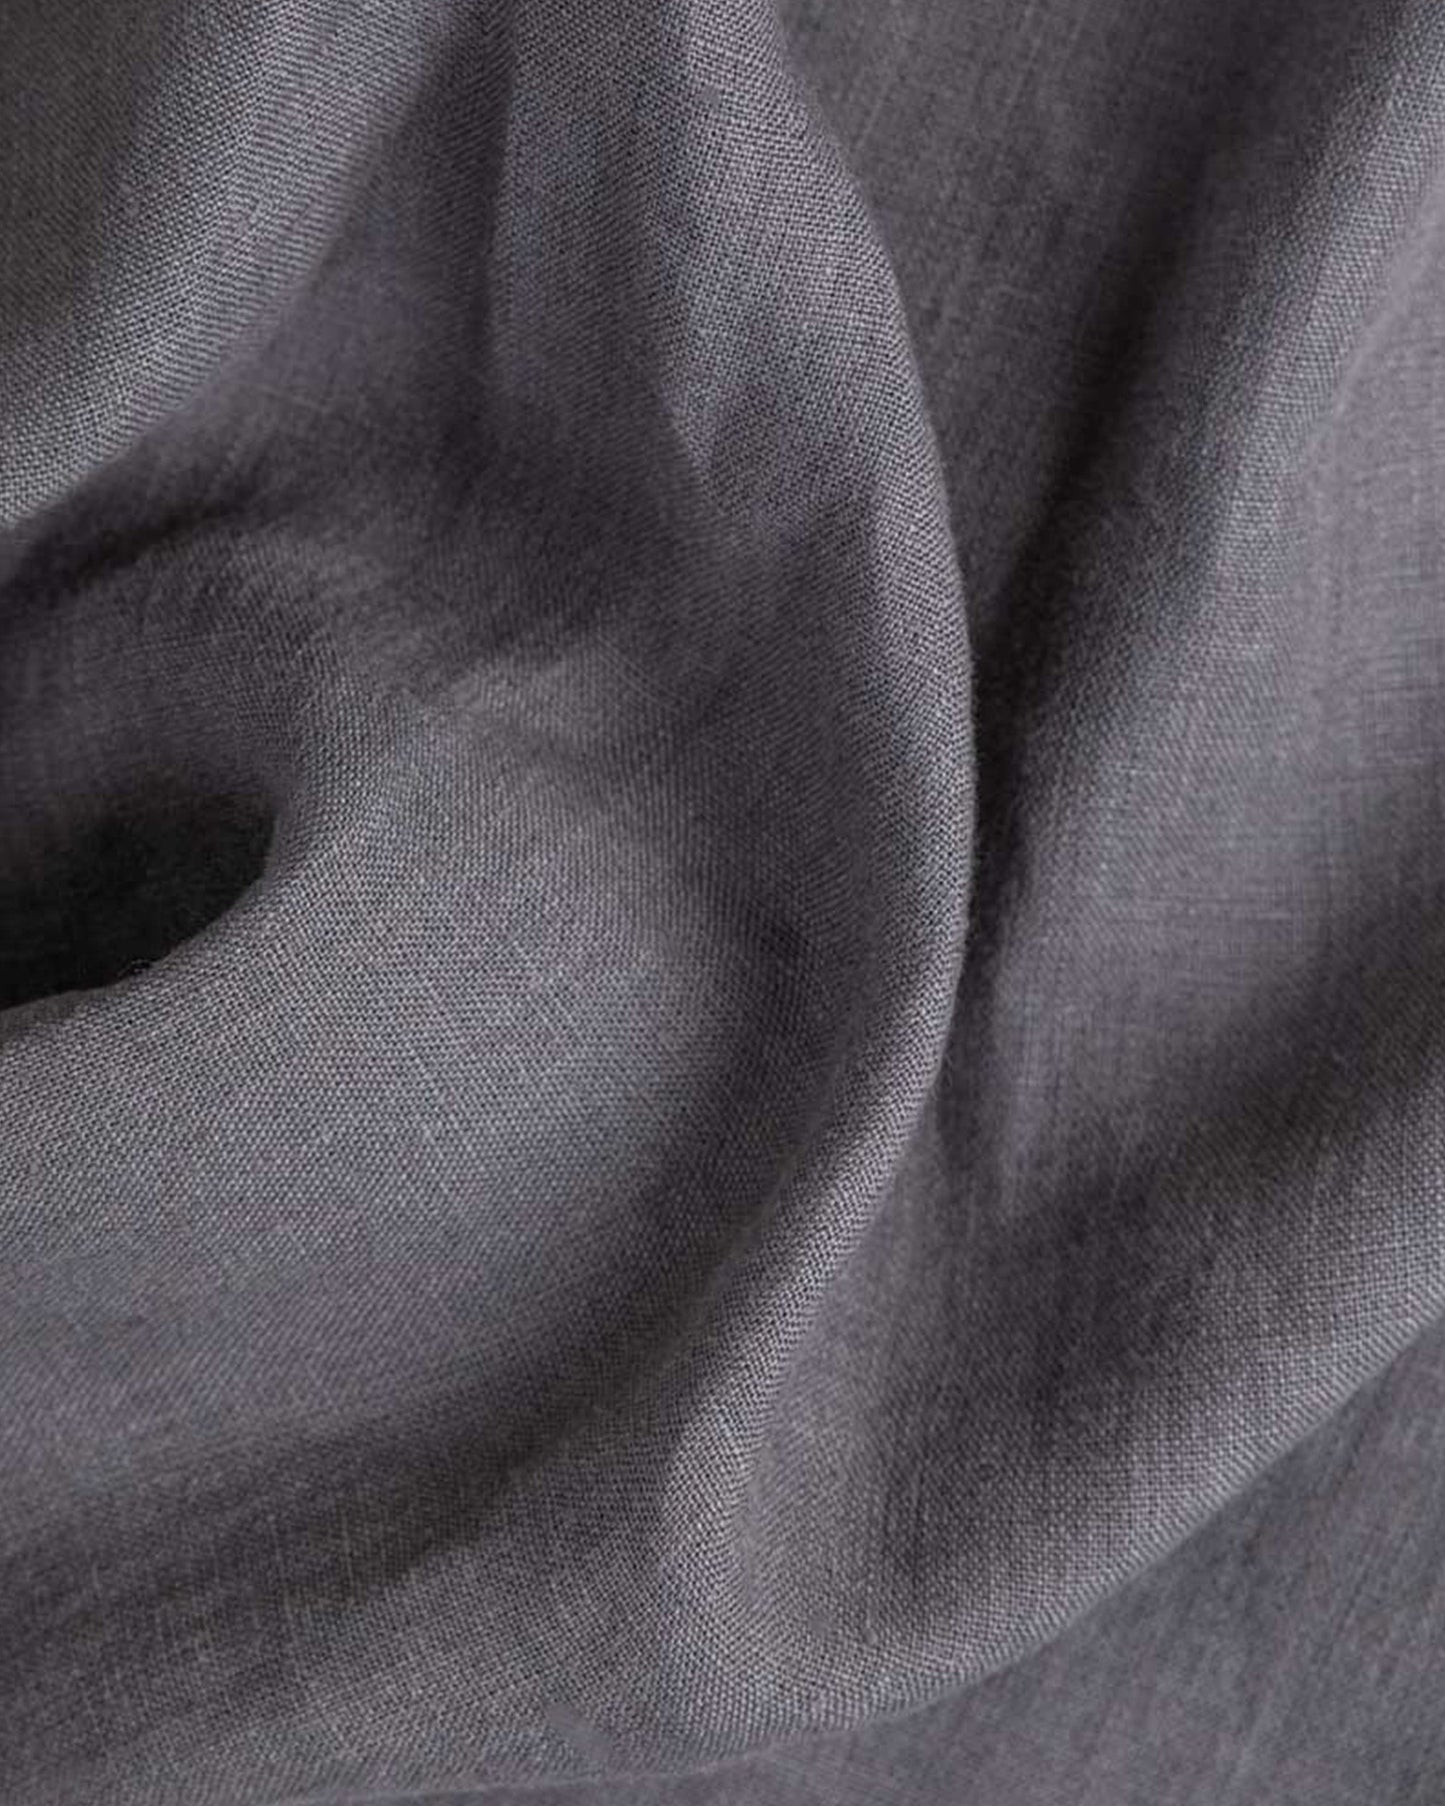 Charcoal gray linen duvet cover - MagicLinen